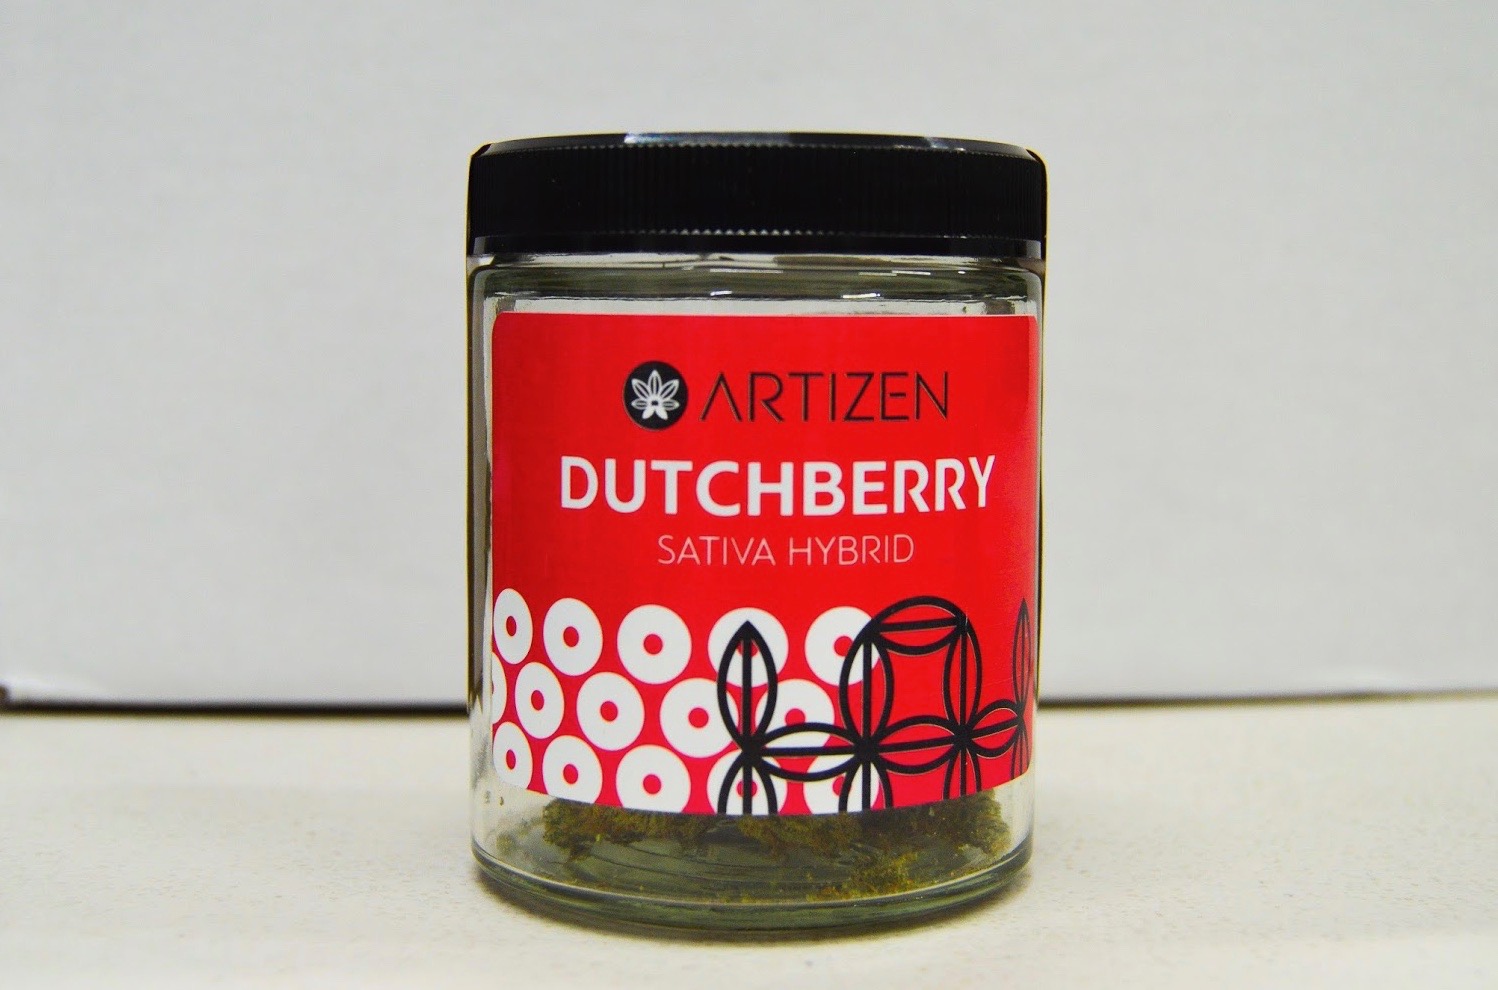 Artizen Dutchberry